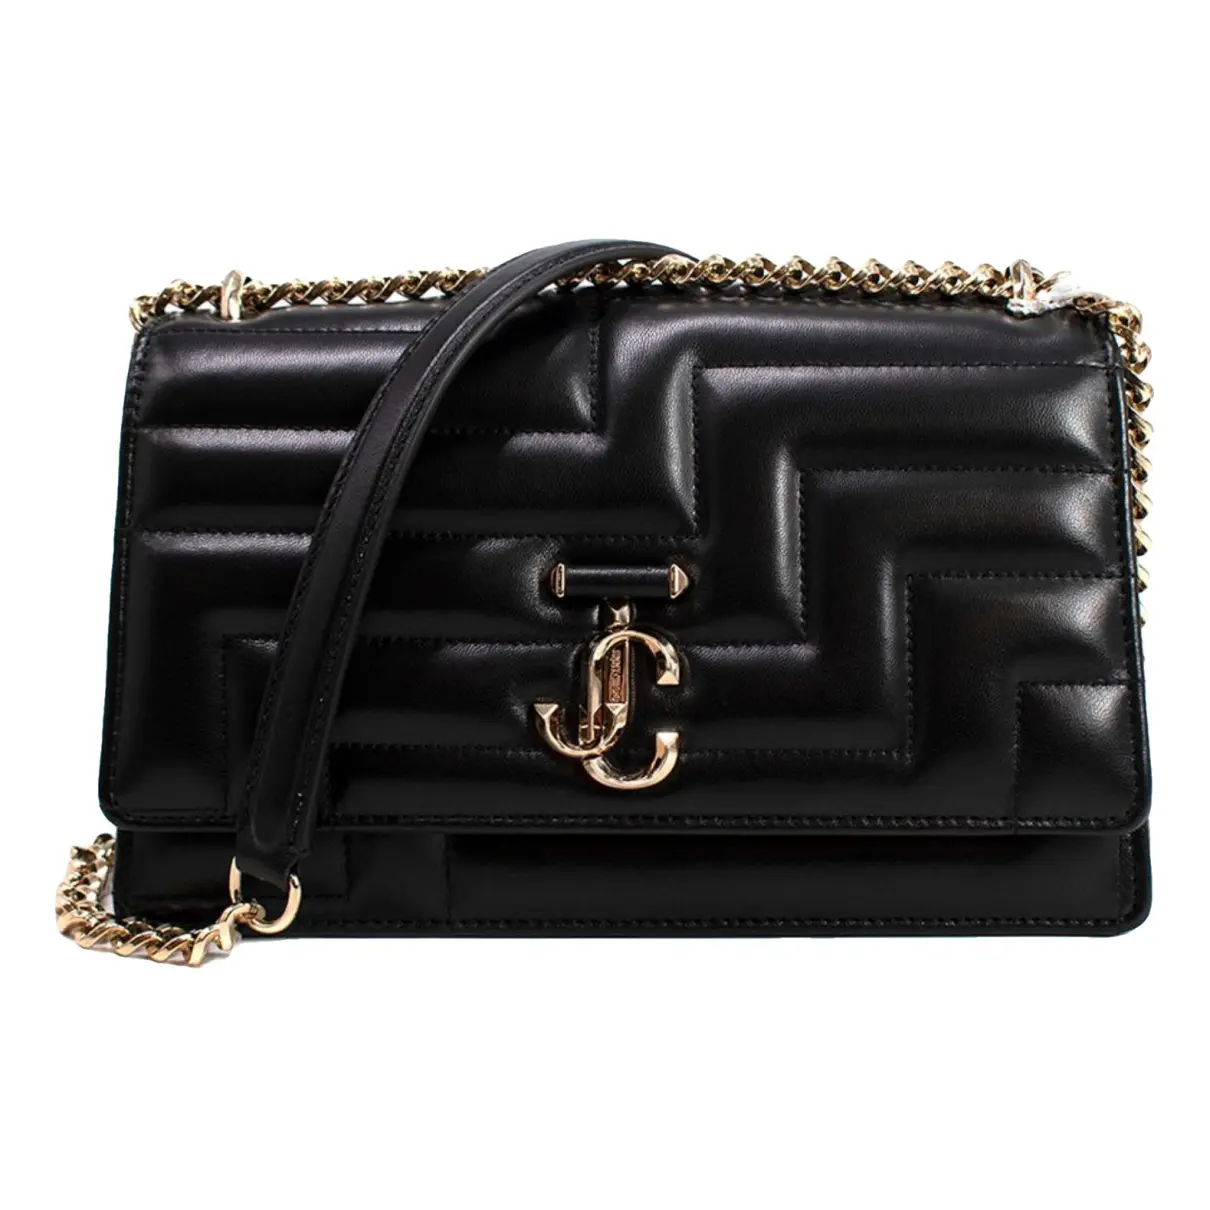 Varenne leather handbag